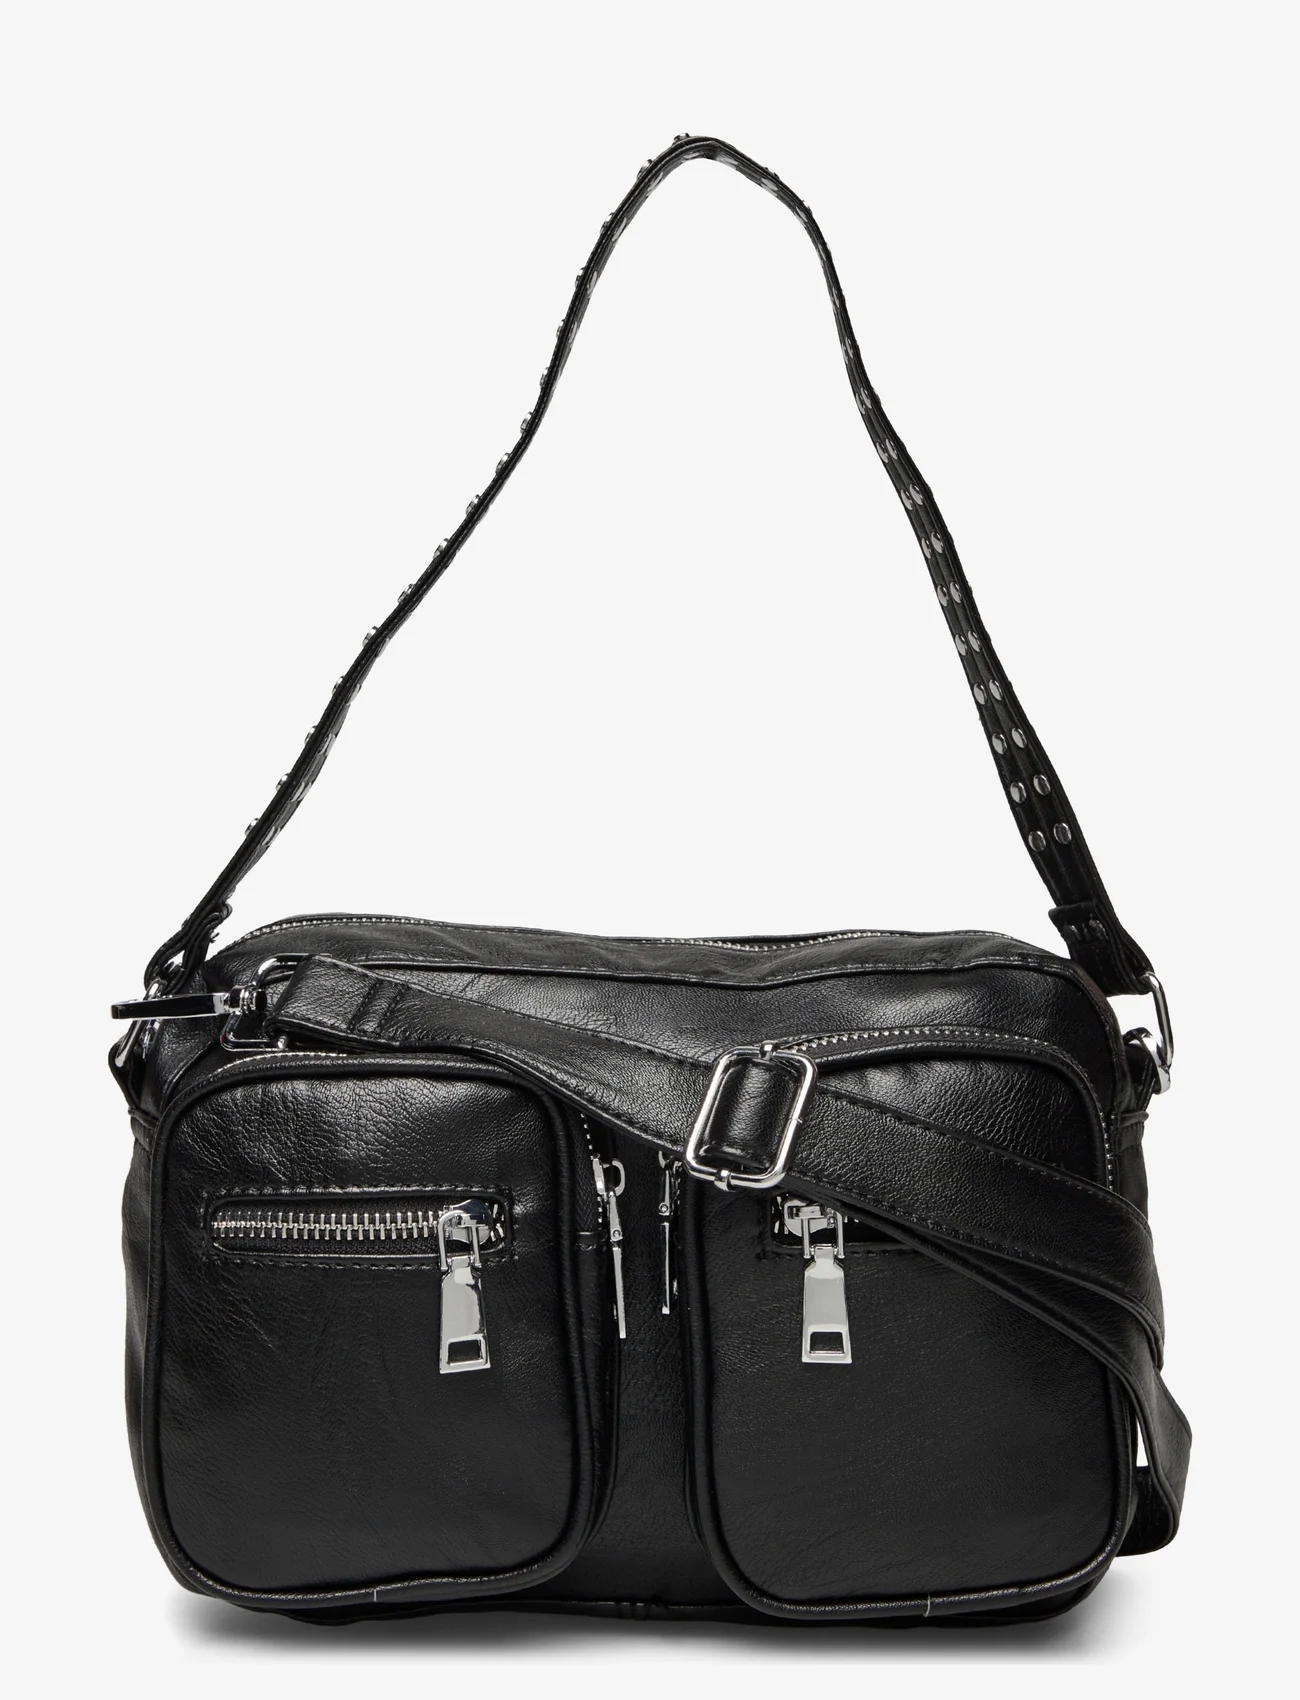 Noella - Celina Bag Black Leather Look - festtøj til outletpriser - black leather look - 0